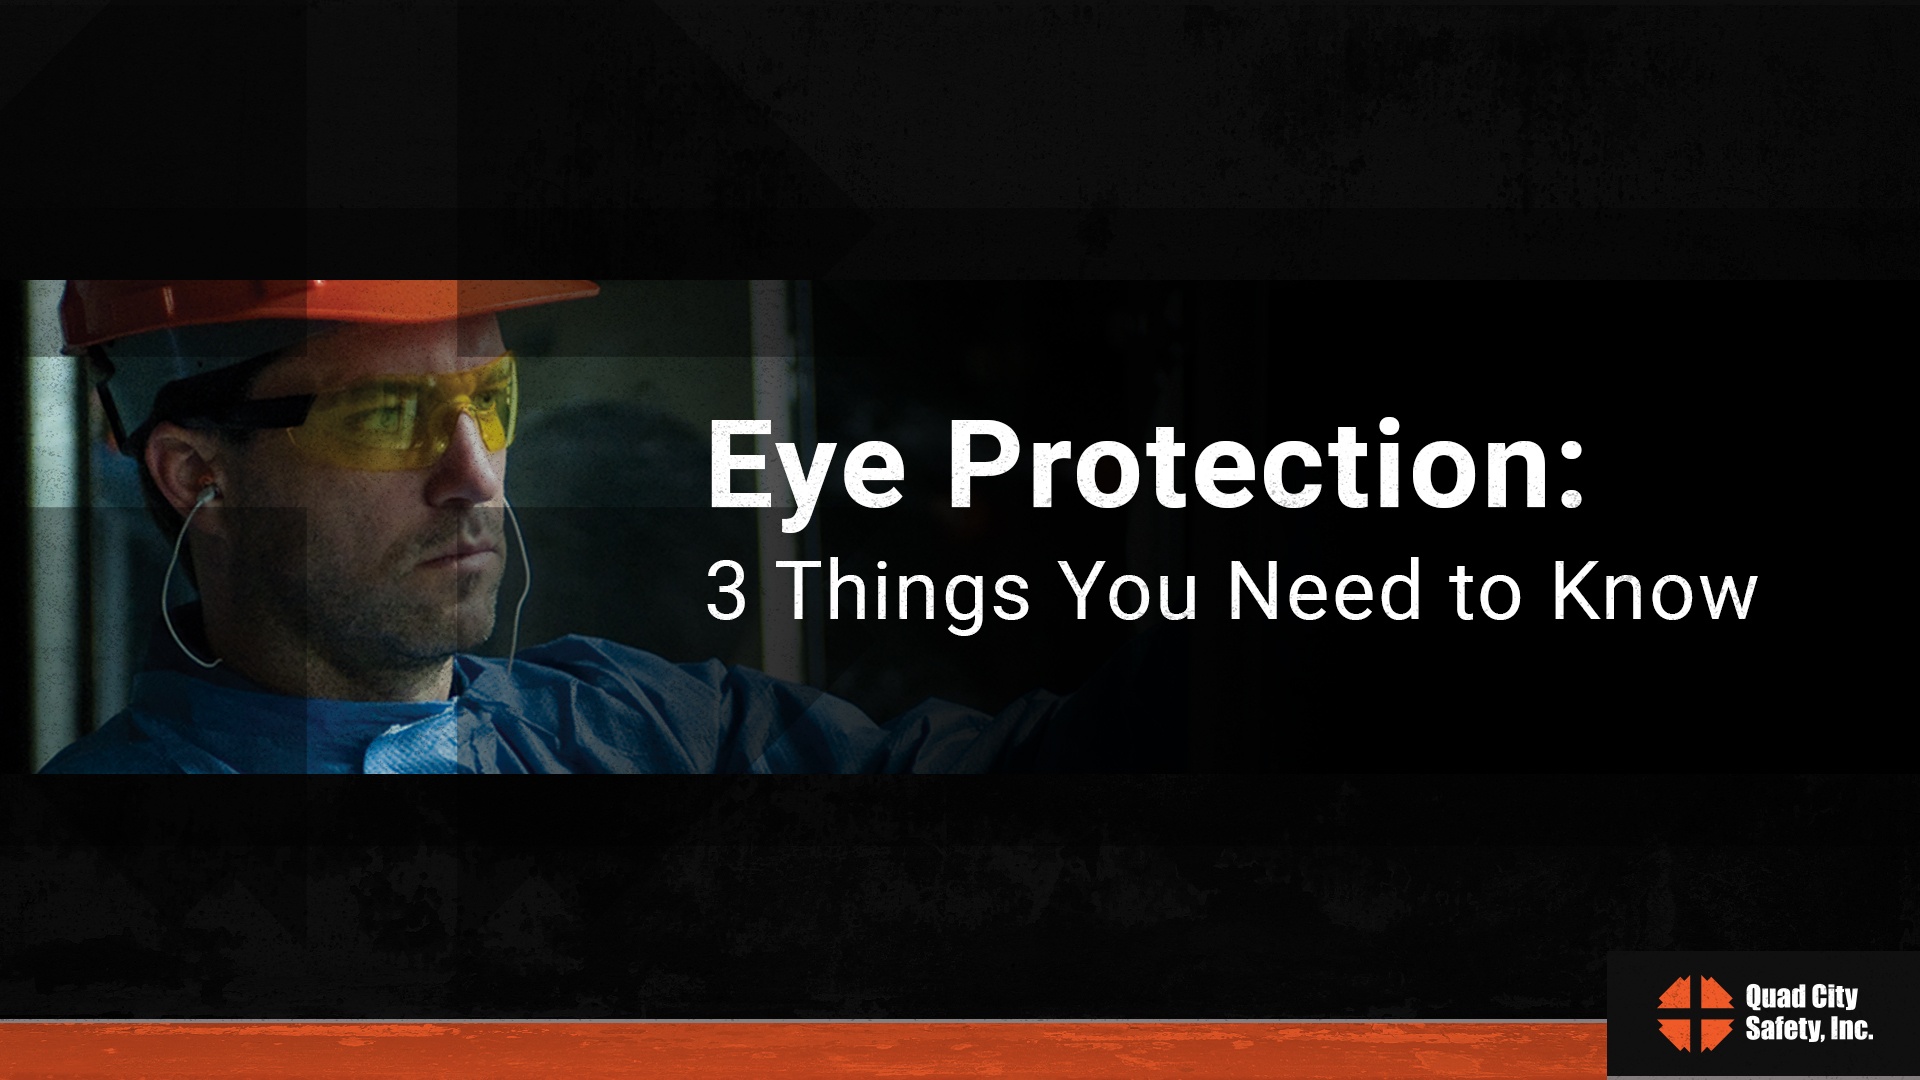 QCS C3 PCO - Eye Protection Title Slide Sample.jpg